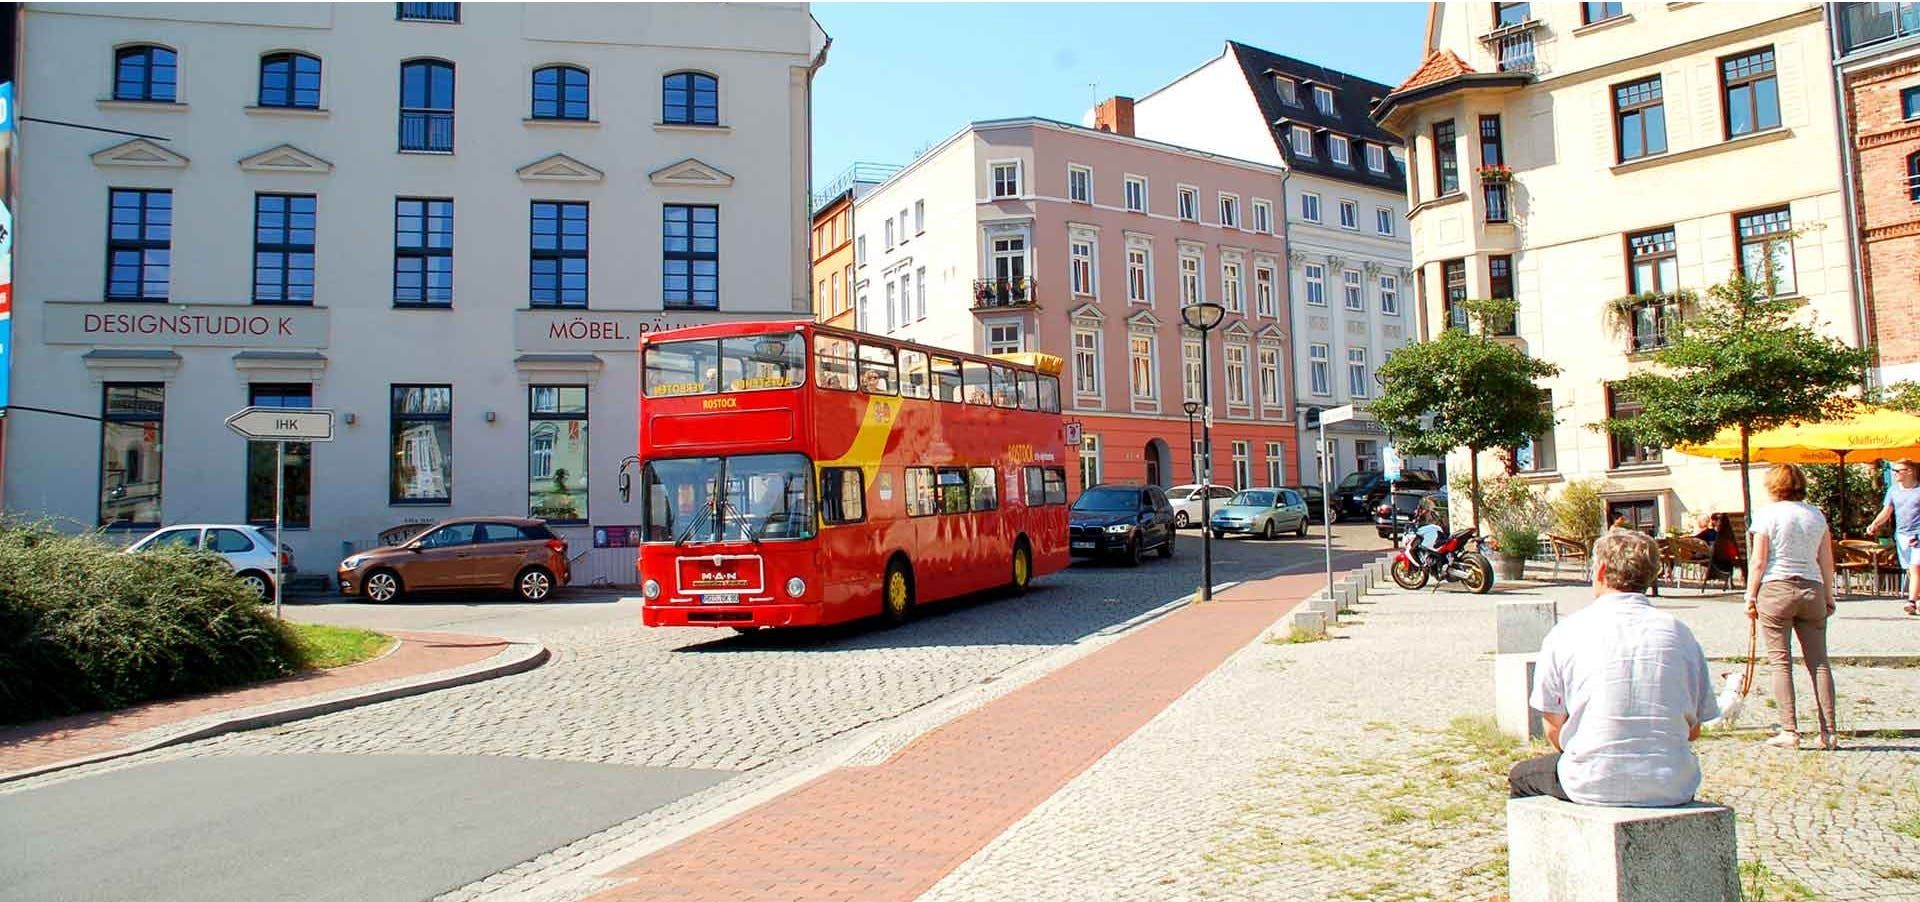 Imagen del tour: Recorrido por la ciudad de Rostock en autobús de dos pisos